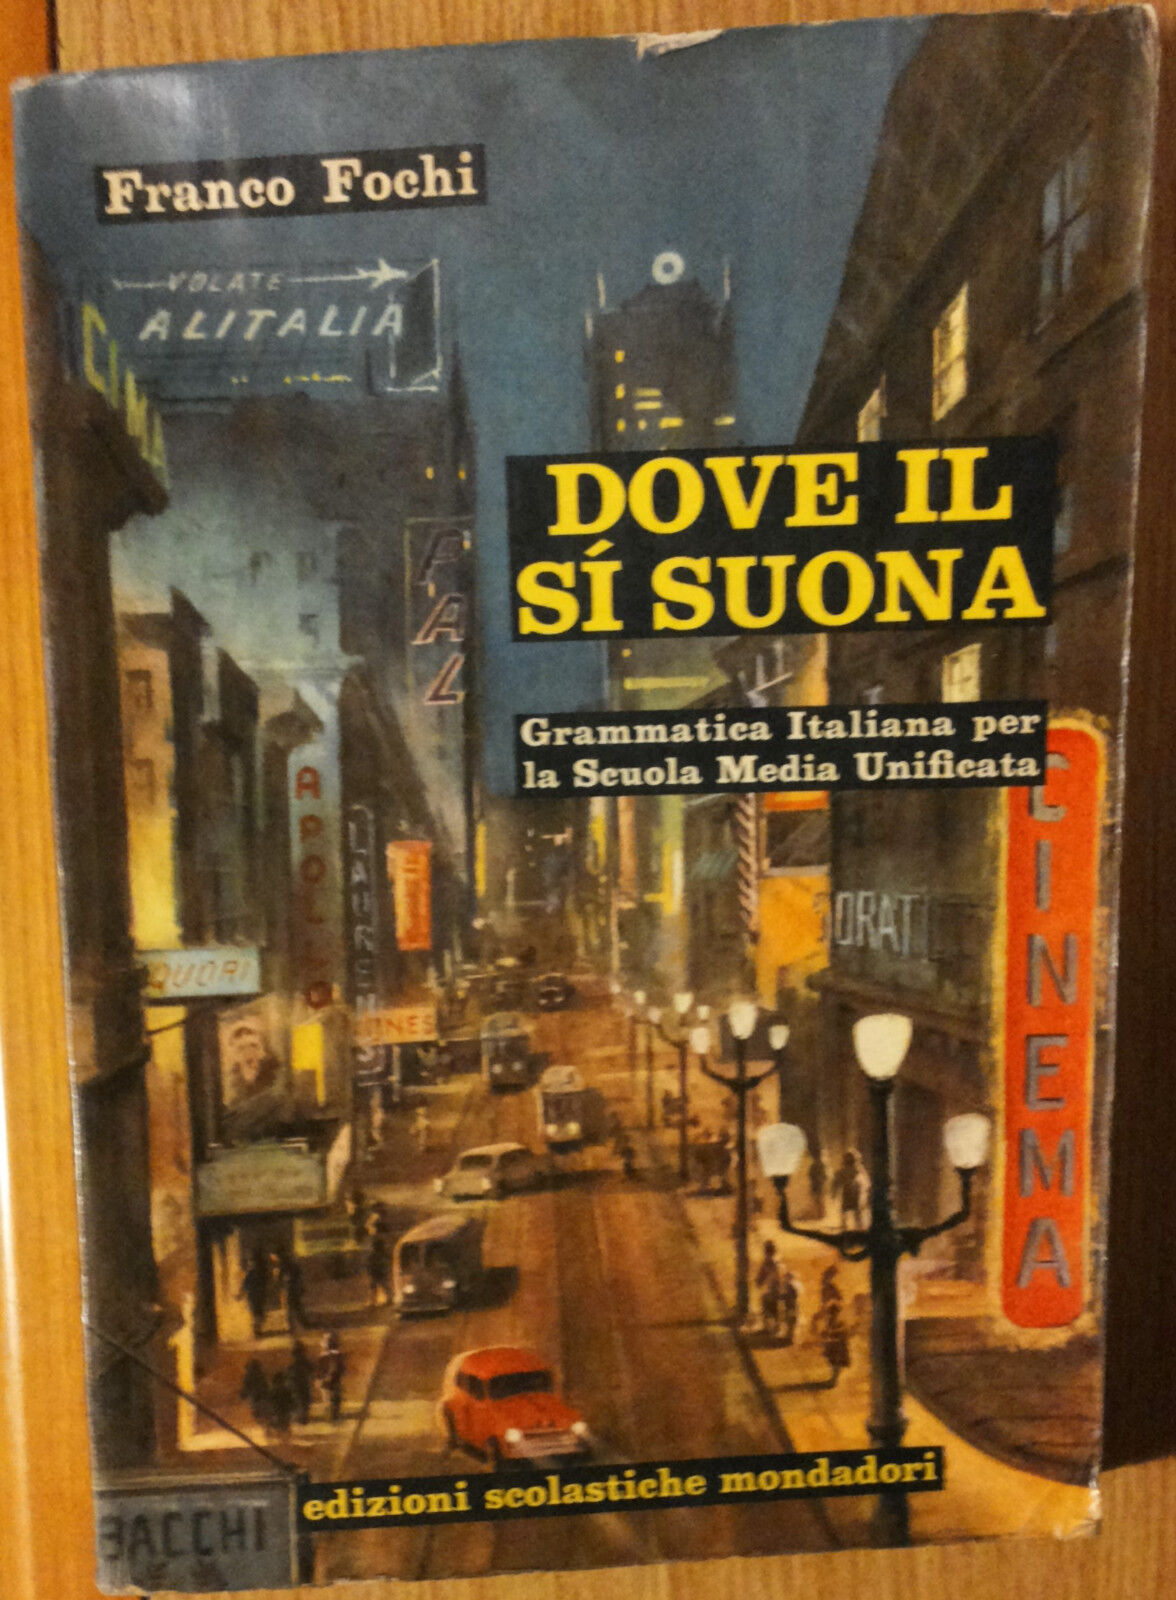 Dove il si? suona - Fochi - Edizioni Scolastiche Mondadori,1963 - R